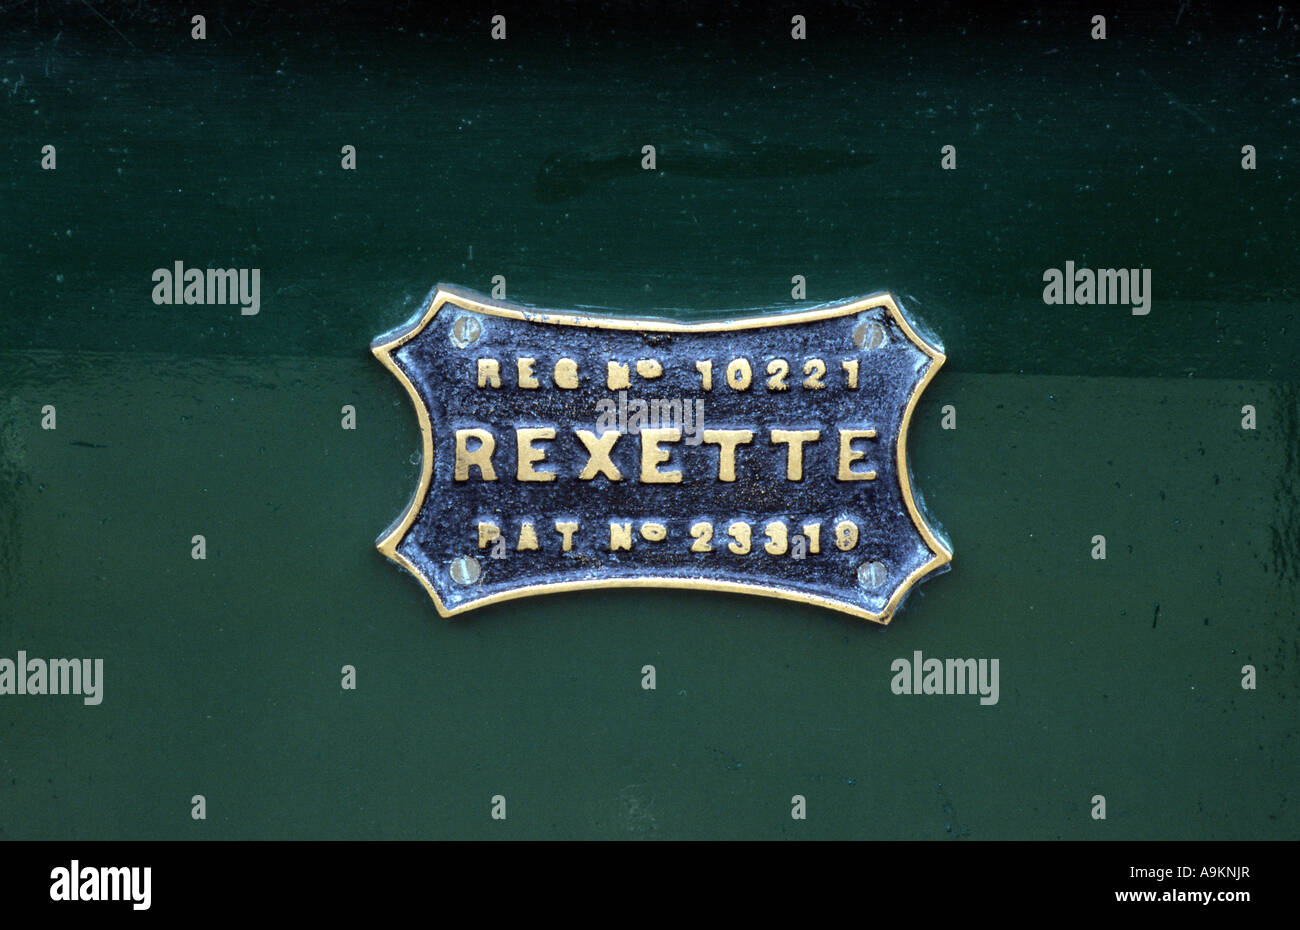 Forecar Rexette Rex de 1905. Constructeur automobile français 1901 à 1914. Rex Rexette auto voiture marque insigne motif britannique Banque D'Images